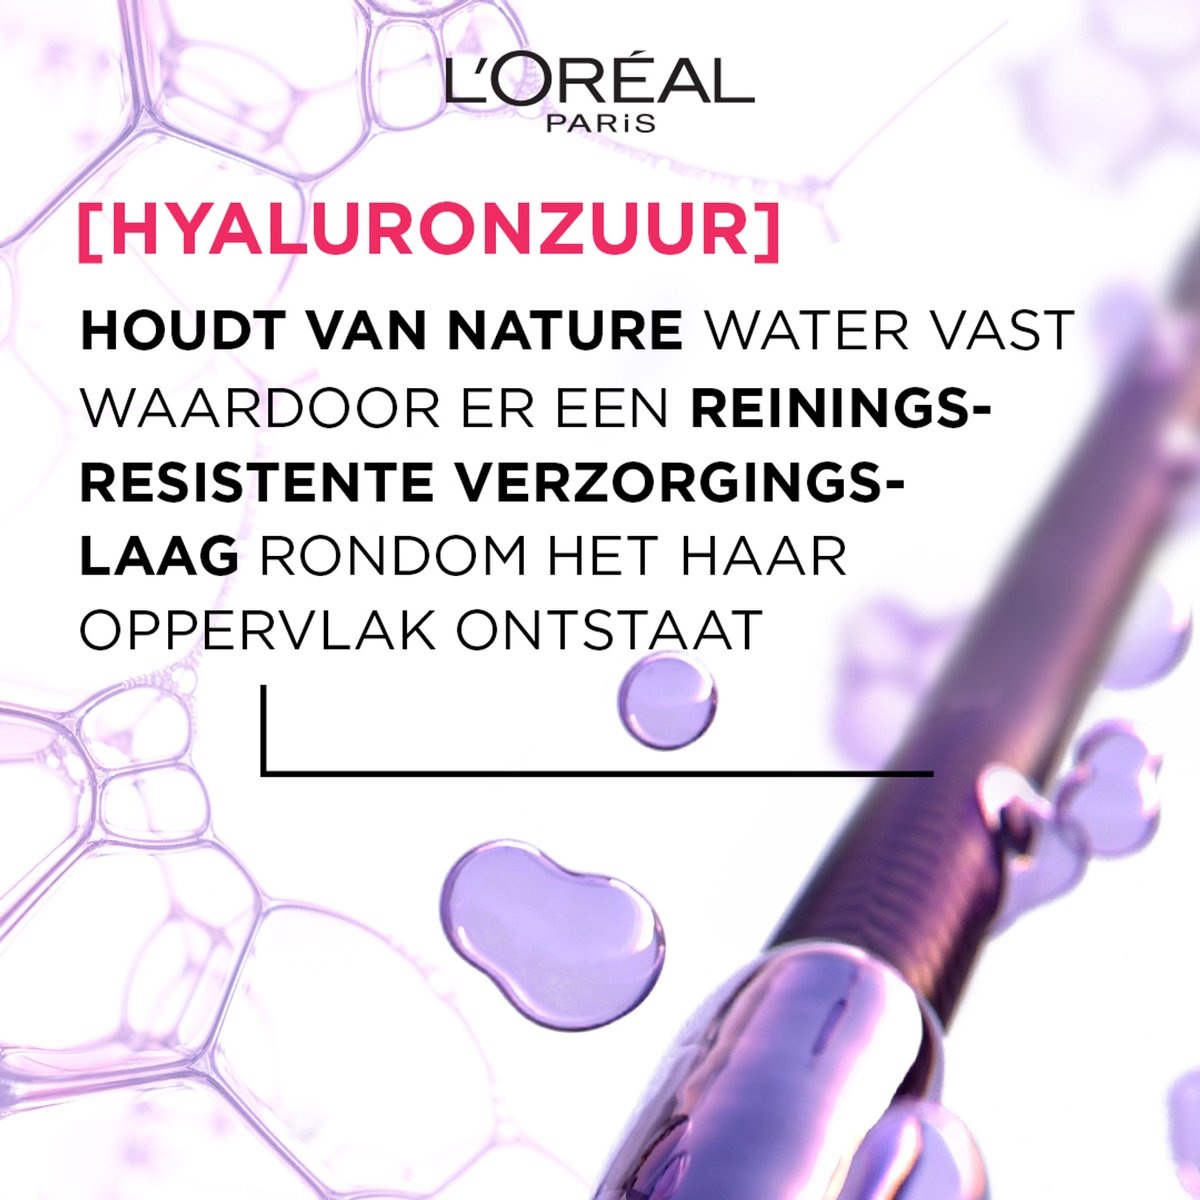 L'Oréal Paris Elvive Hydra Hyaluronic Wonder Water – Feuchtigkeitsspendend mit Hyaluronsäure – 200 ml